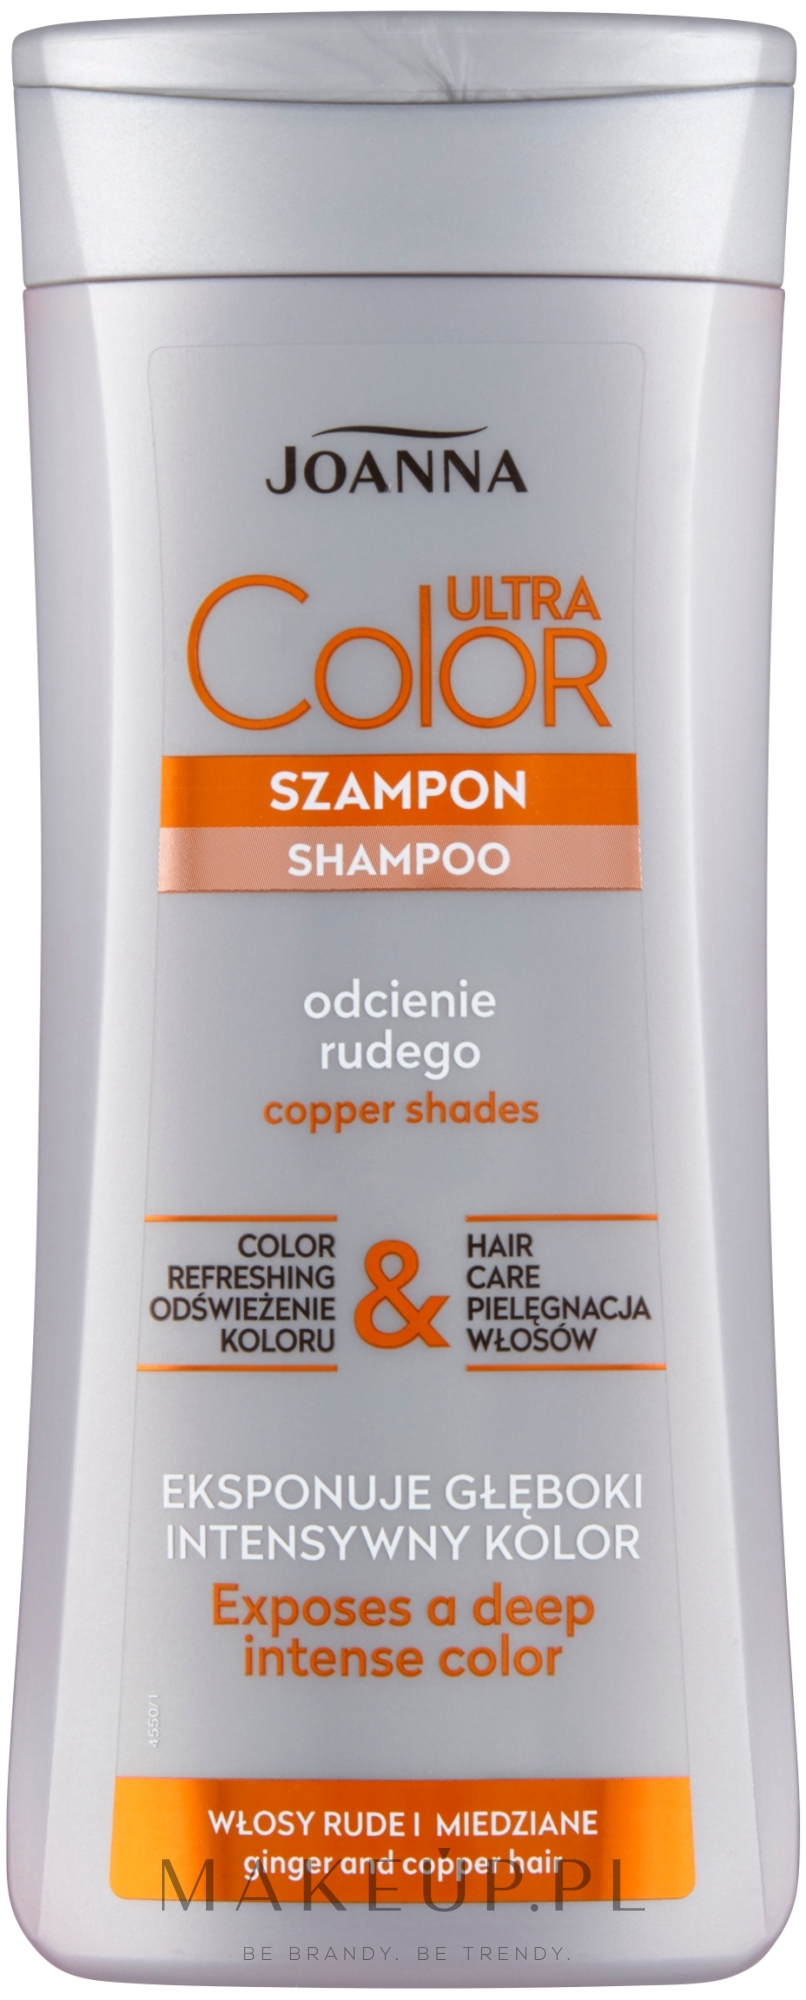 szampon do włosów rudych put&rub